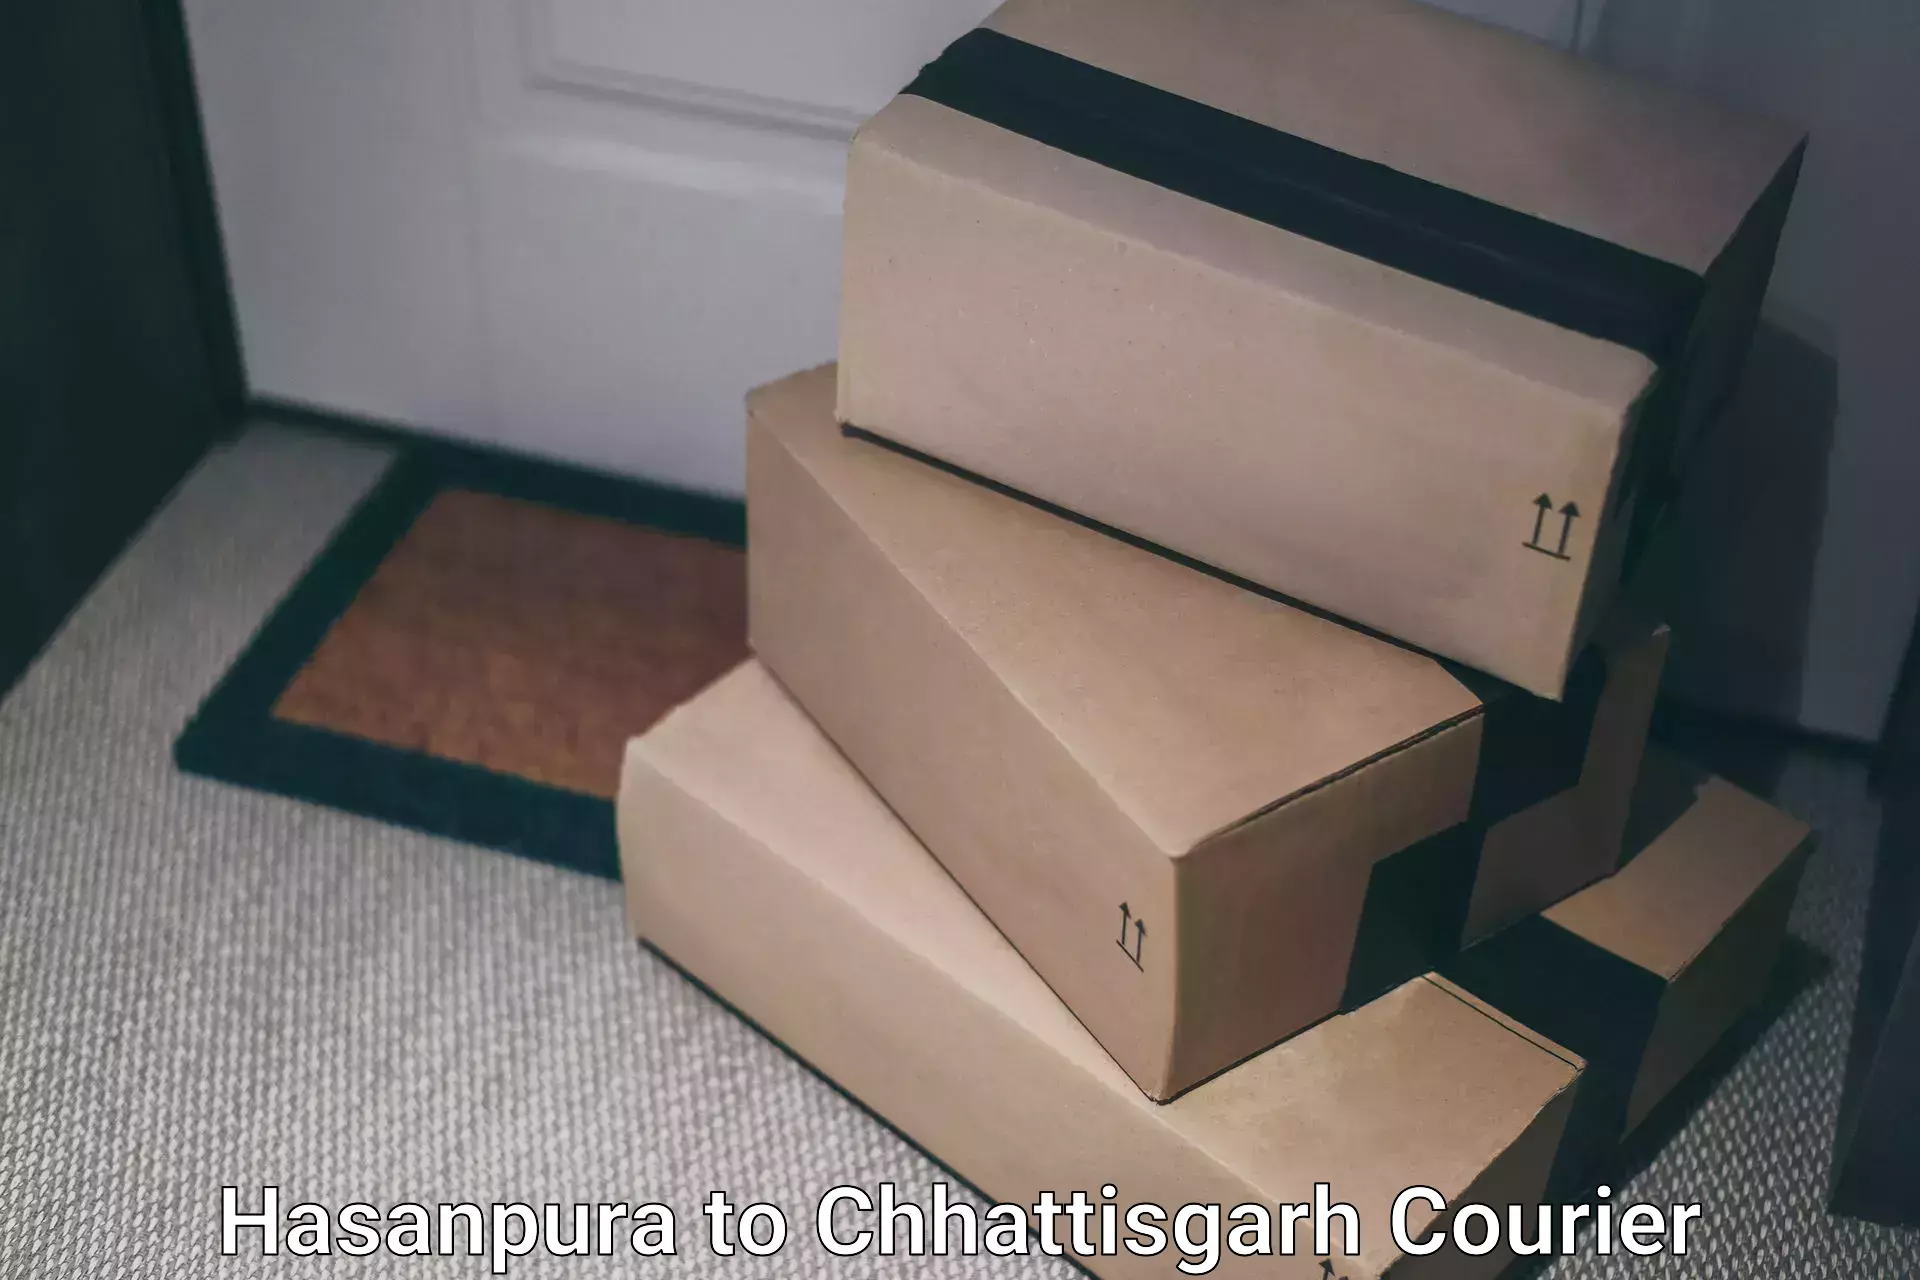 User-friendly delivery service Hasanpura to Chhattisgarh